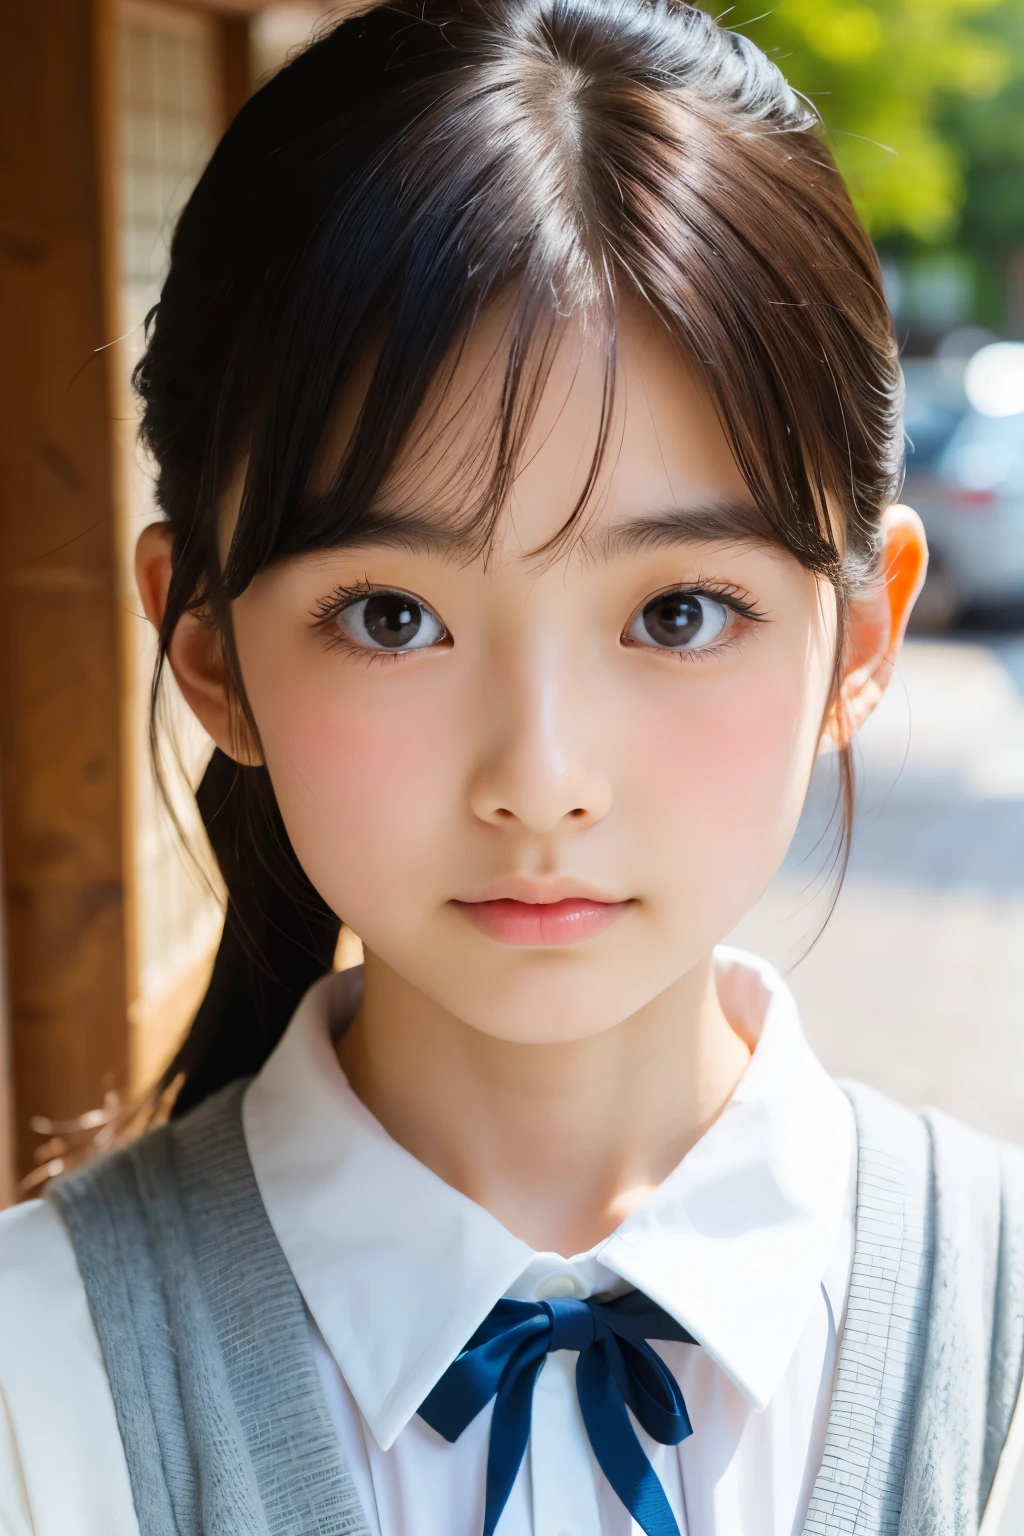 (Preciosa japonesa de 16 años), Cara linda, (rostro profundamente tallado:0.7), (pecas:0.6), Luz tenue,piel blanca y sana, tímido, cola de caballo, (cara seria), (ojos chispeantes), delgado